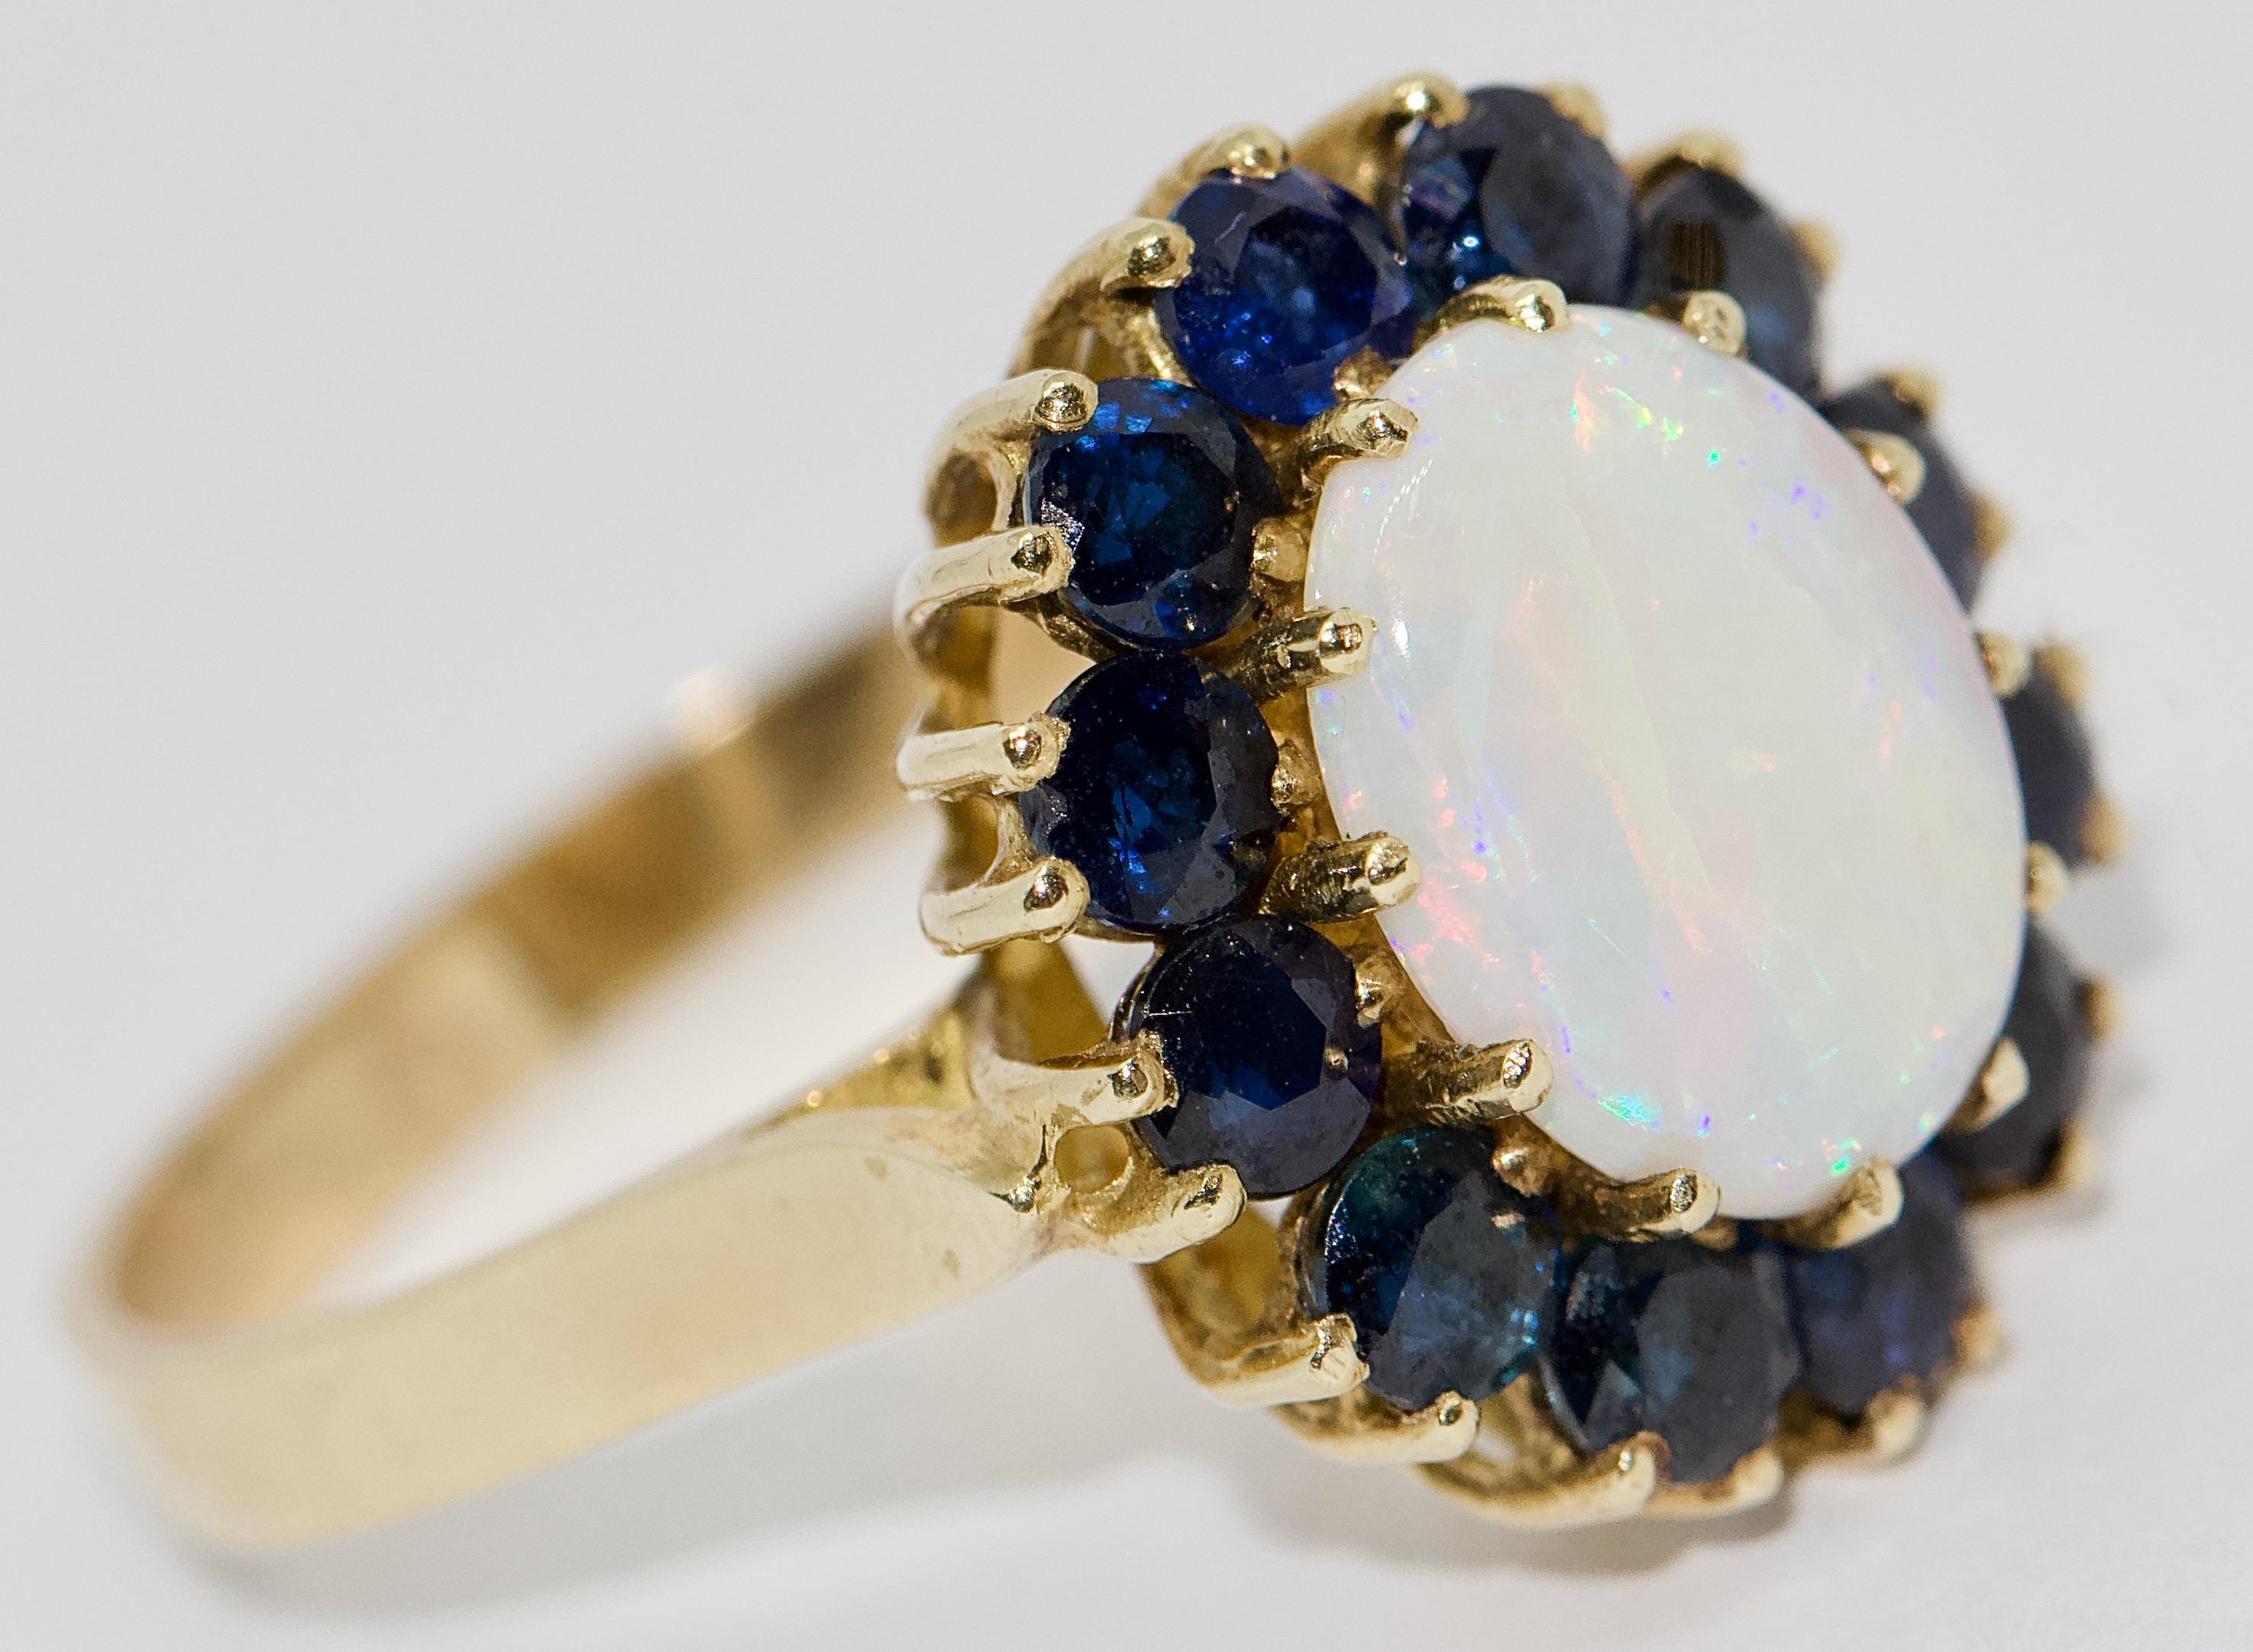 Jolie bague en or pour femme avec une grande opale et des saphirs bleus.

Certificat d'authenticité inclus.

Bague US taille 8
Sur demande, nous pouvons ajuster la taille de l'anneau de manière experte.